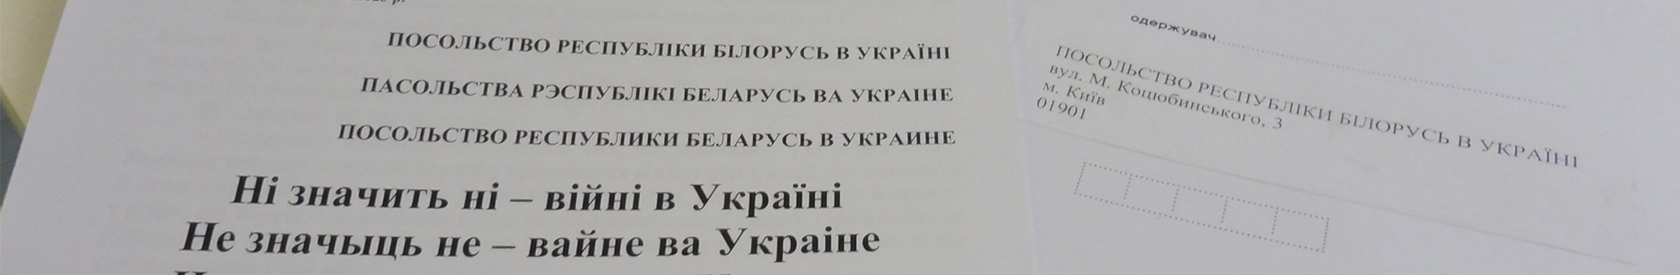 Kijevas remia Baltarusijos karo lauko tarnybos atsisakiusiuosius ir Baltarusijos dezertyrus